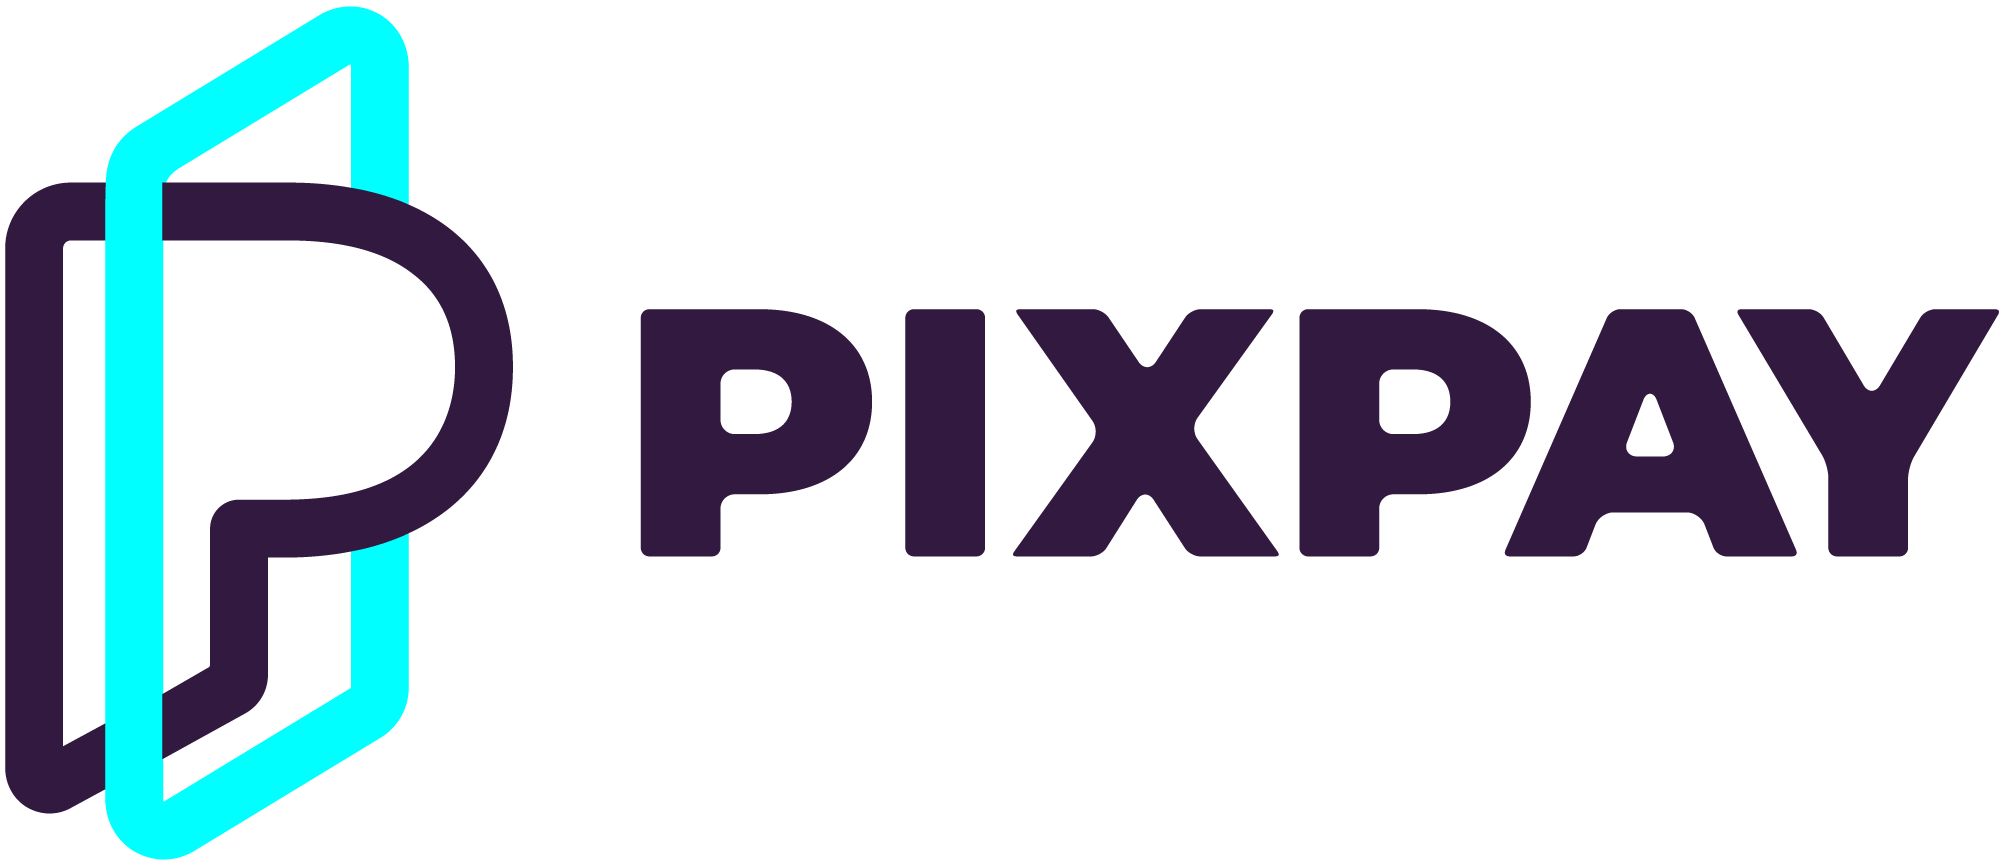 logo pixpay